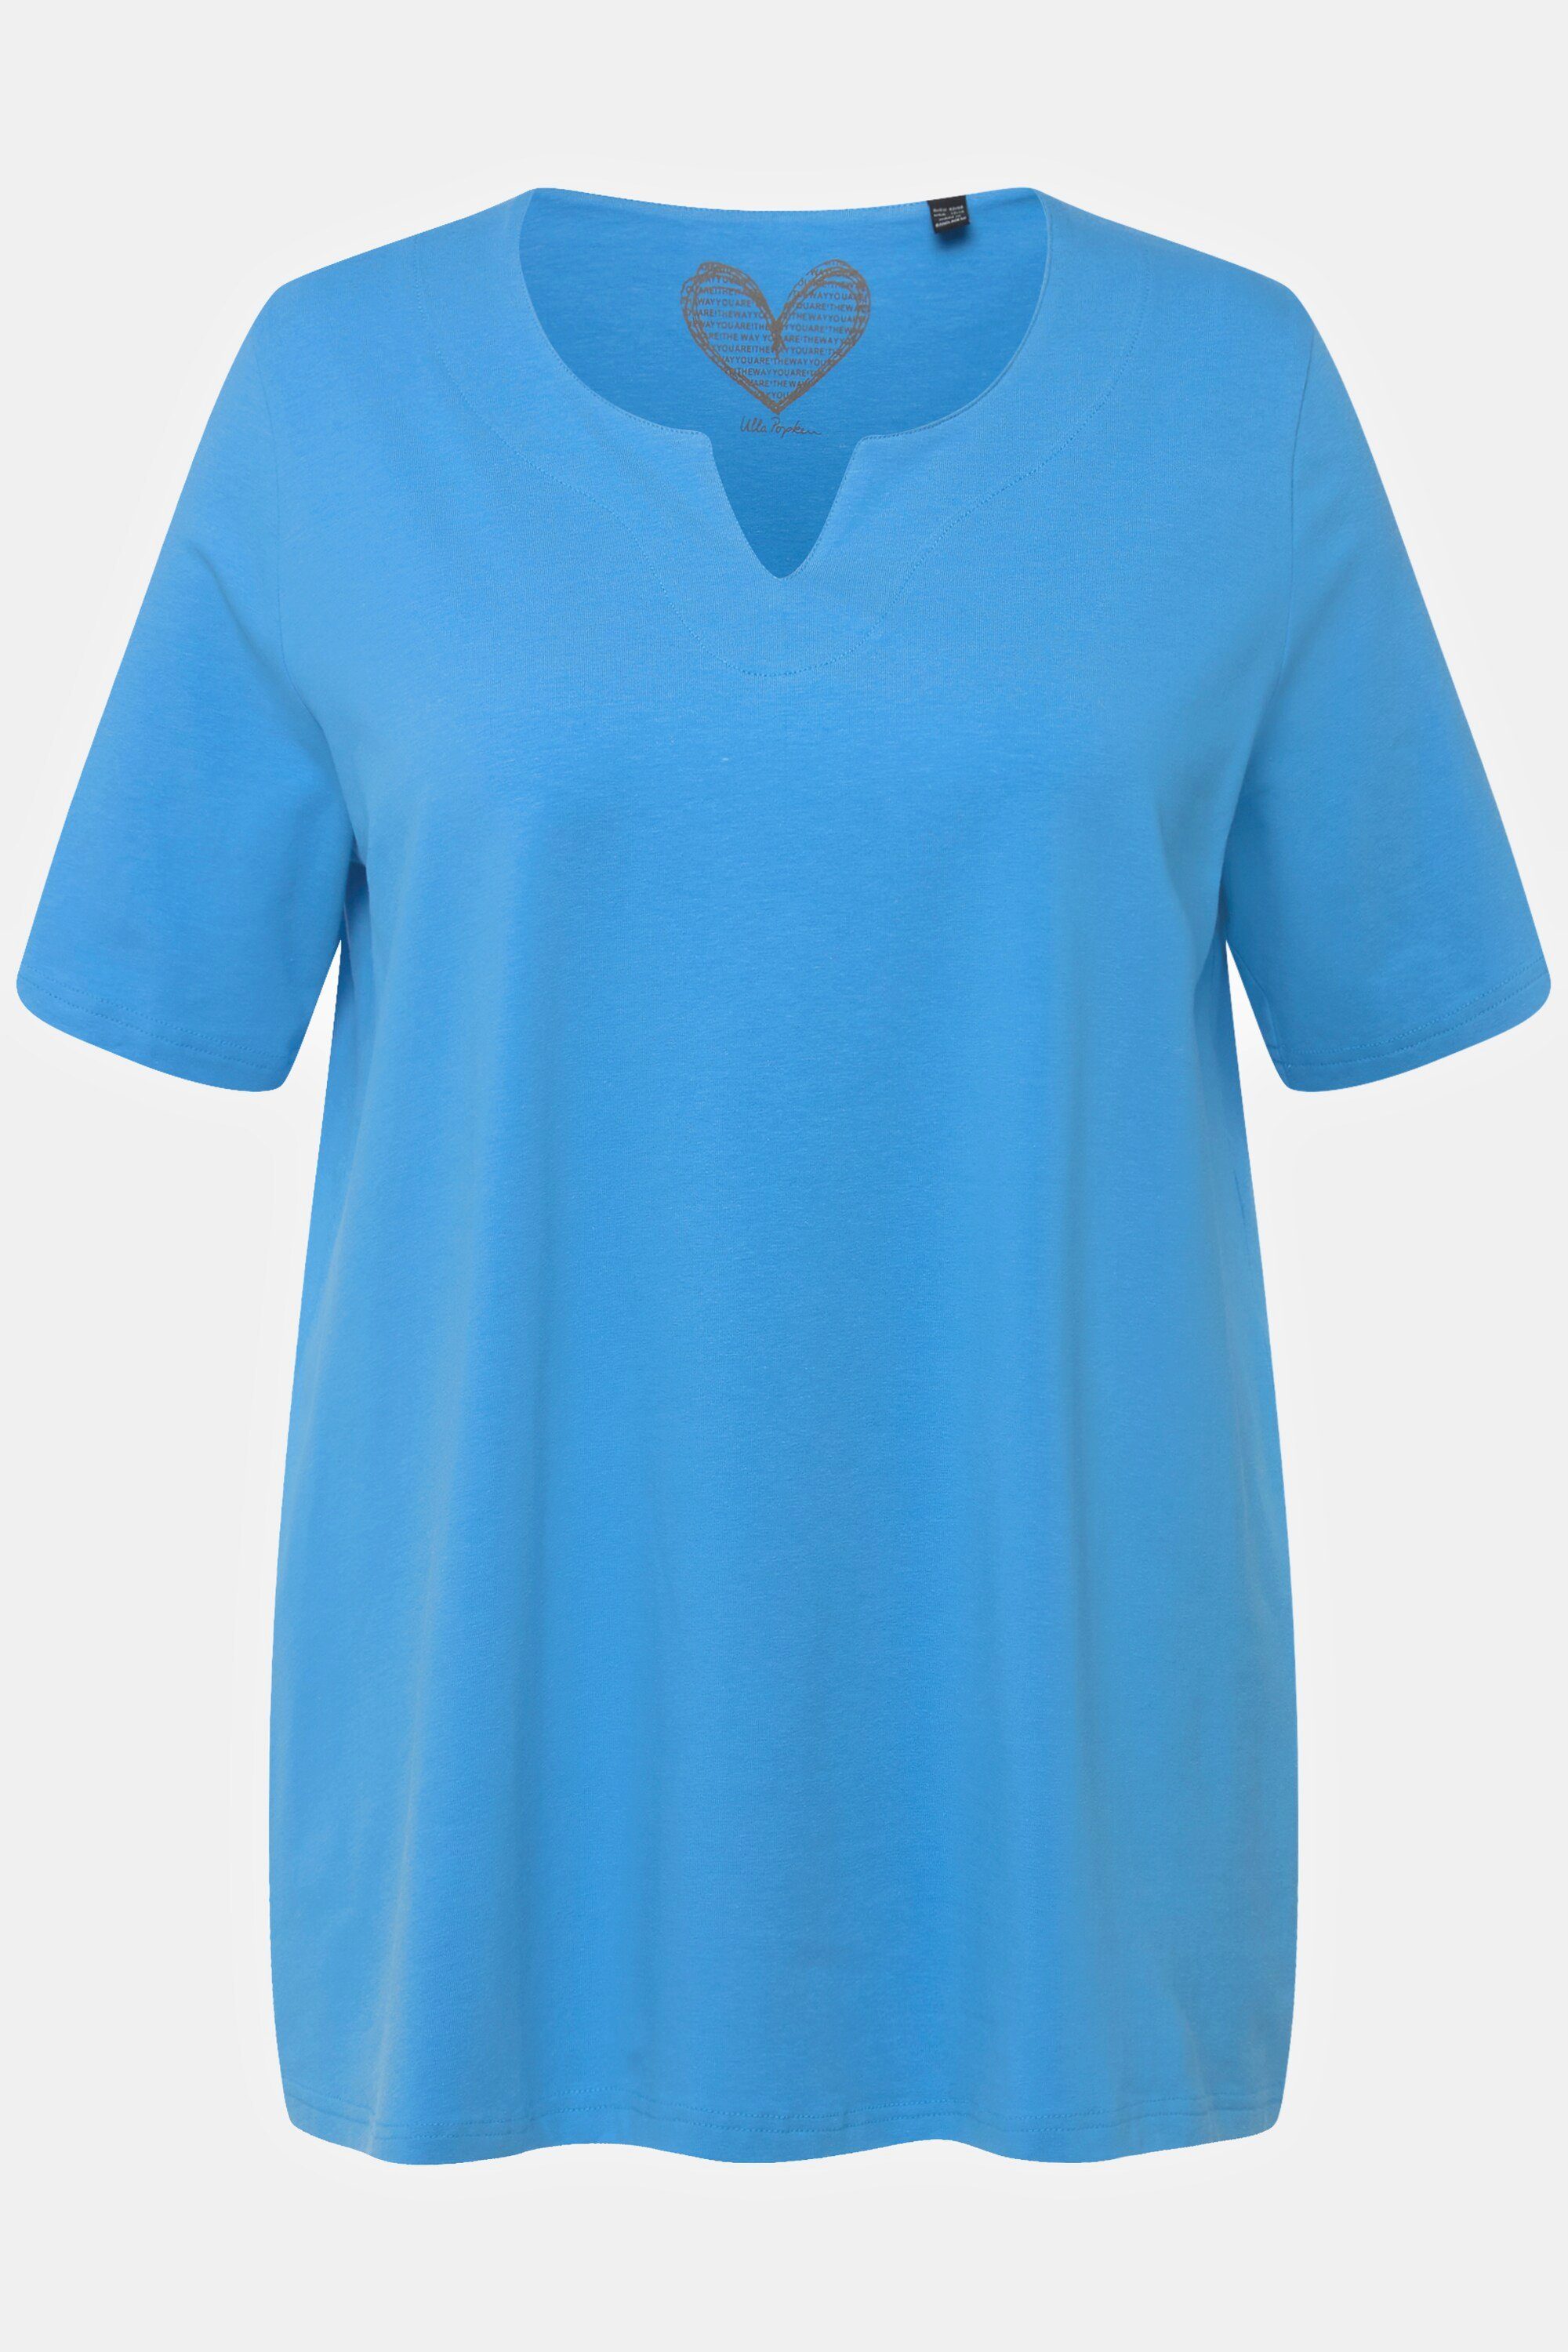 Tunika-Ausschnitt Ulla A-Linie Rundhalsshirt T-Shirt Popken himmelblau Halbarm